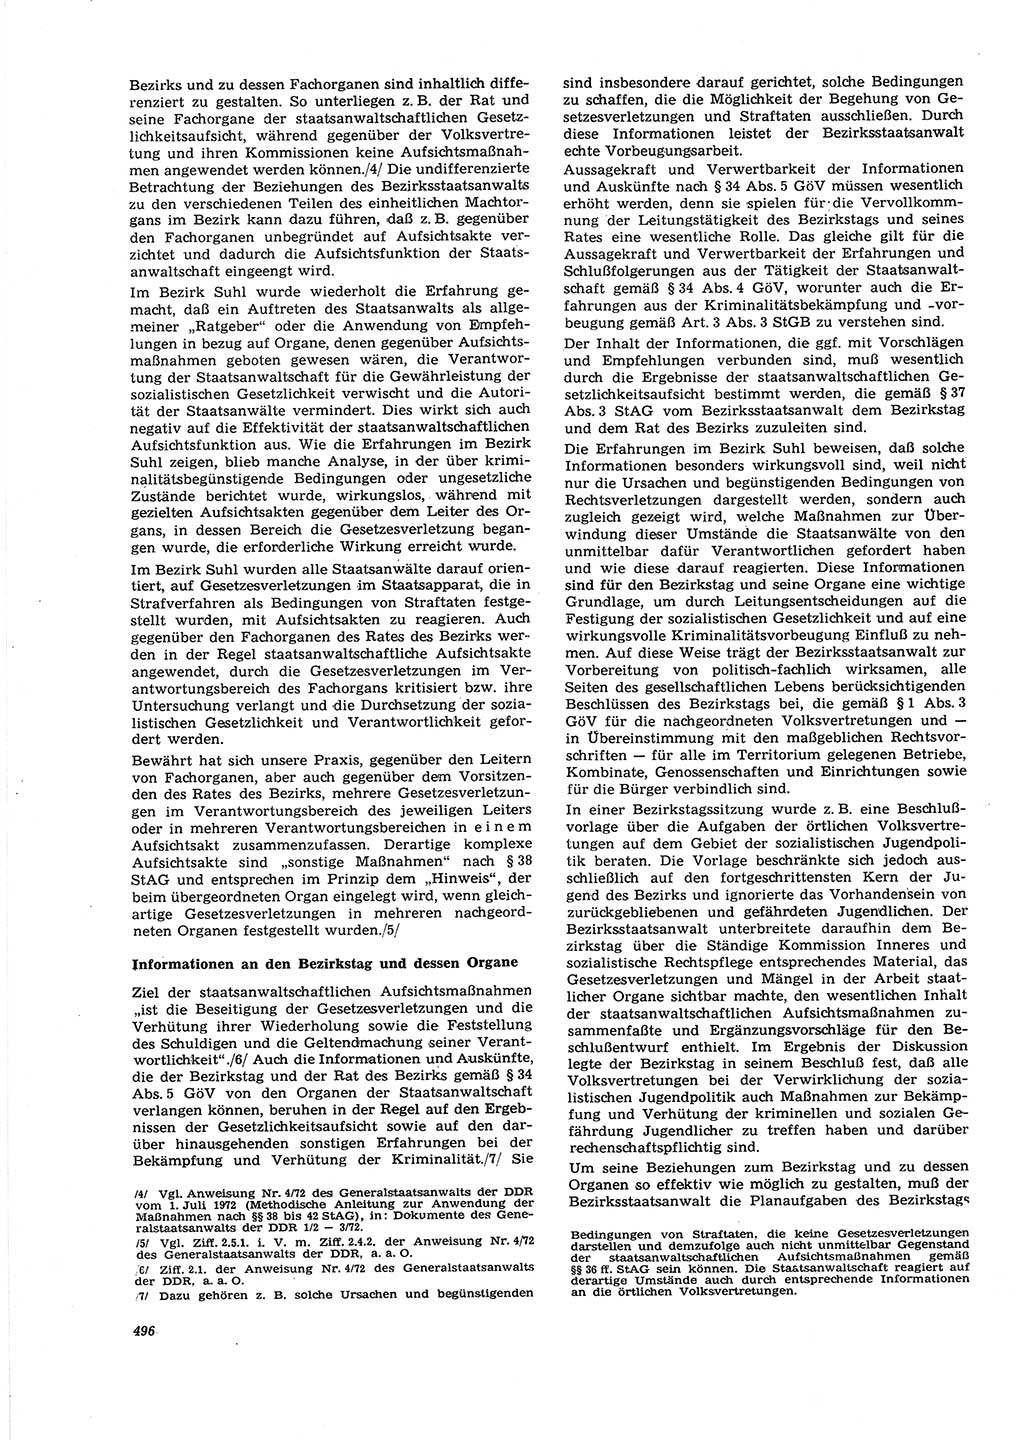 Neue Justiz (NJ), Zeitschrift für Recht und Rechtswissenschaft [Deutsche Demokratische Republik (DDR)], 27. Jahrgang 1973, Seite 496 (NJ DDR 1973, S. 496)